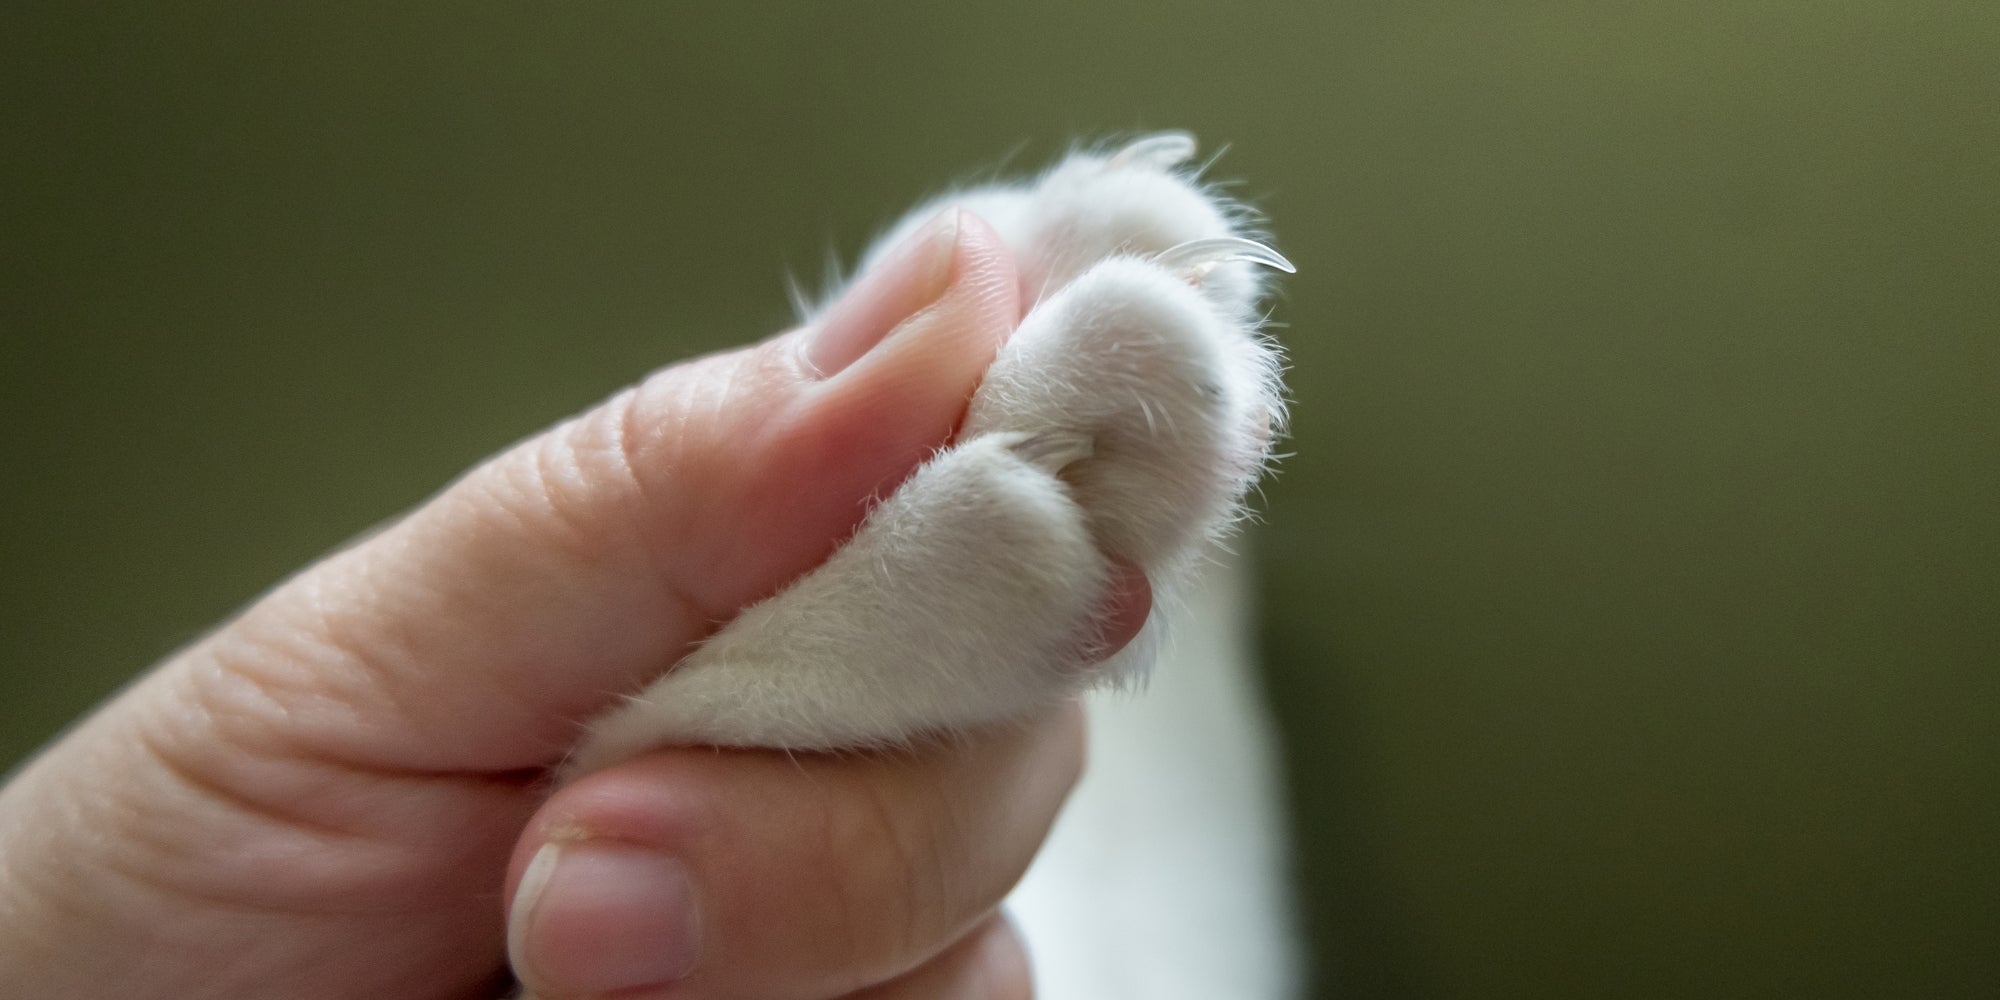 La mano humana coge la pata del gato antes de cortarle la uña.